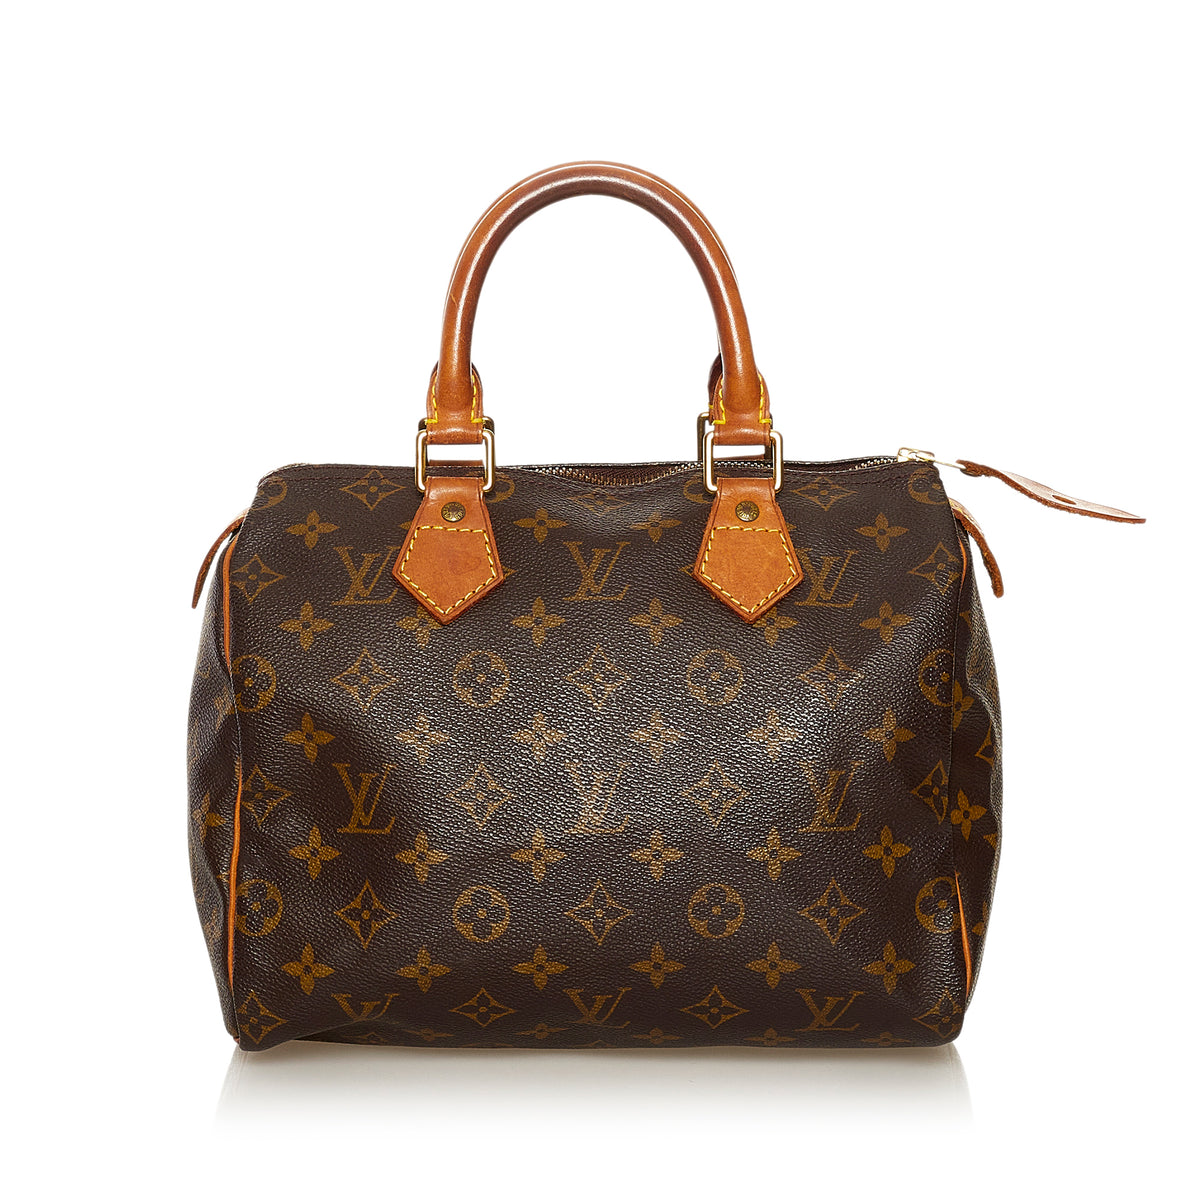 Preloved Louis Vuitton Speedy 25 Monogram Bag SP0978 060623